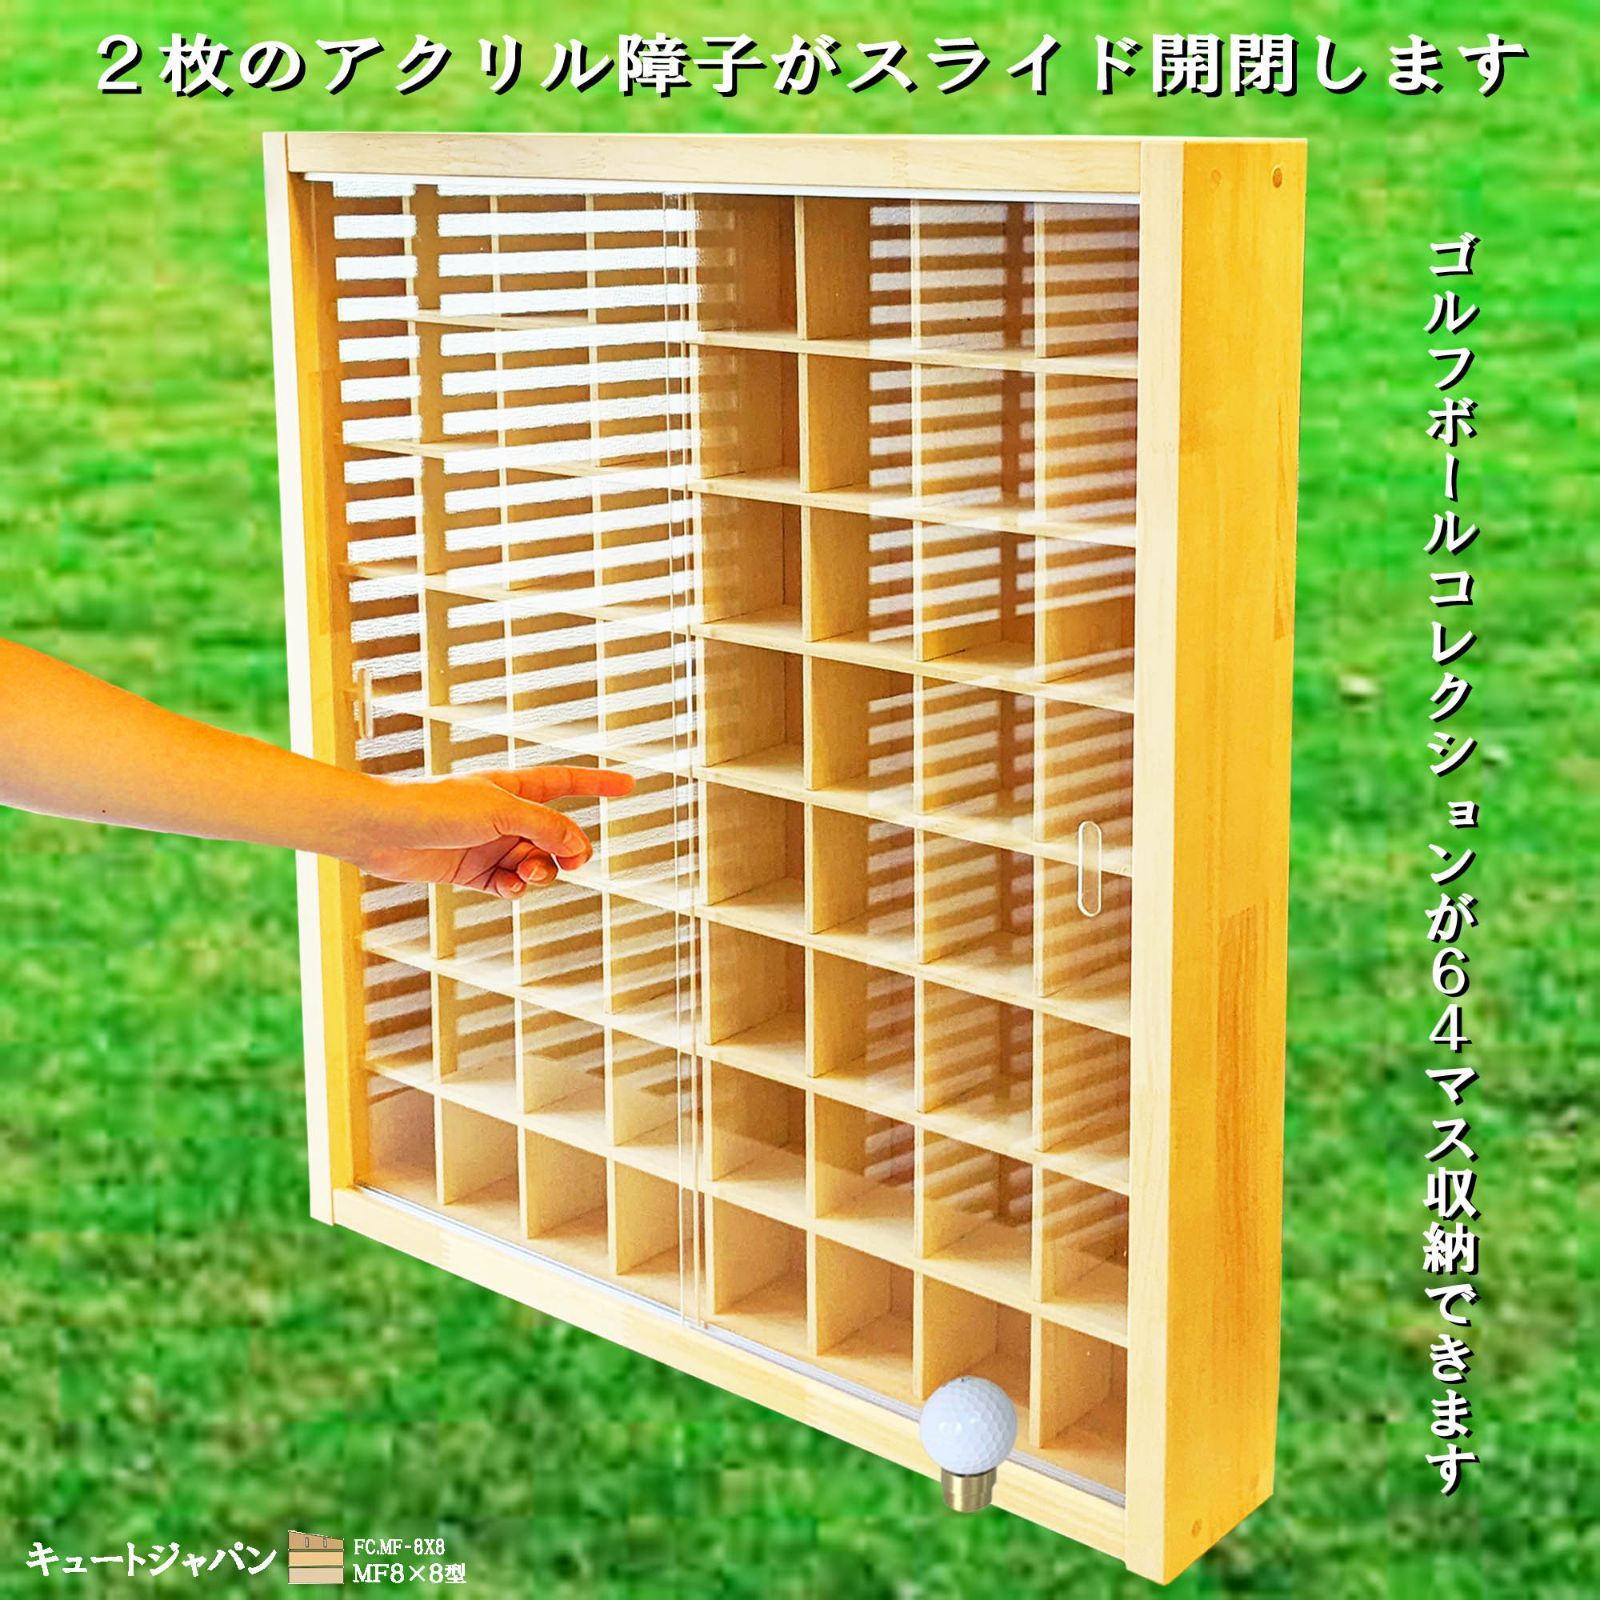 コレクション収納ケース アクリル スライド障子式 日本製 収納棚 